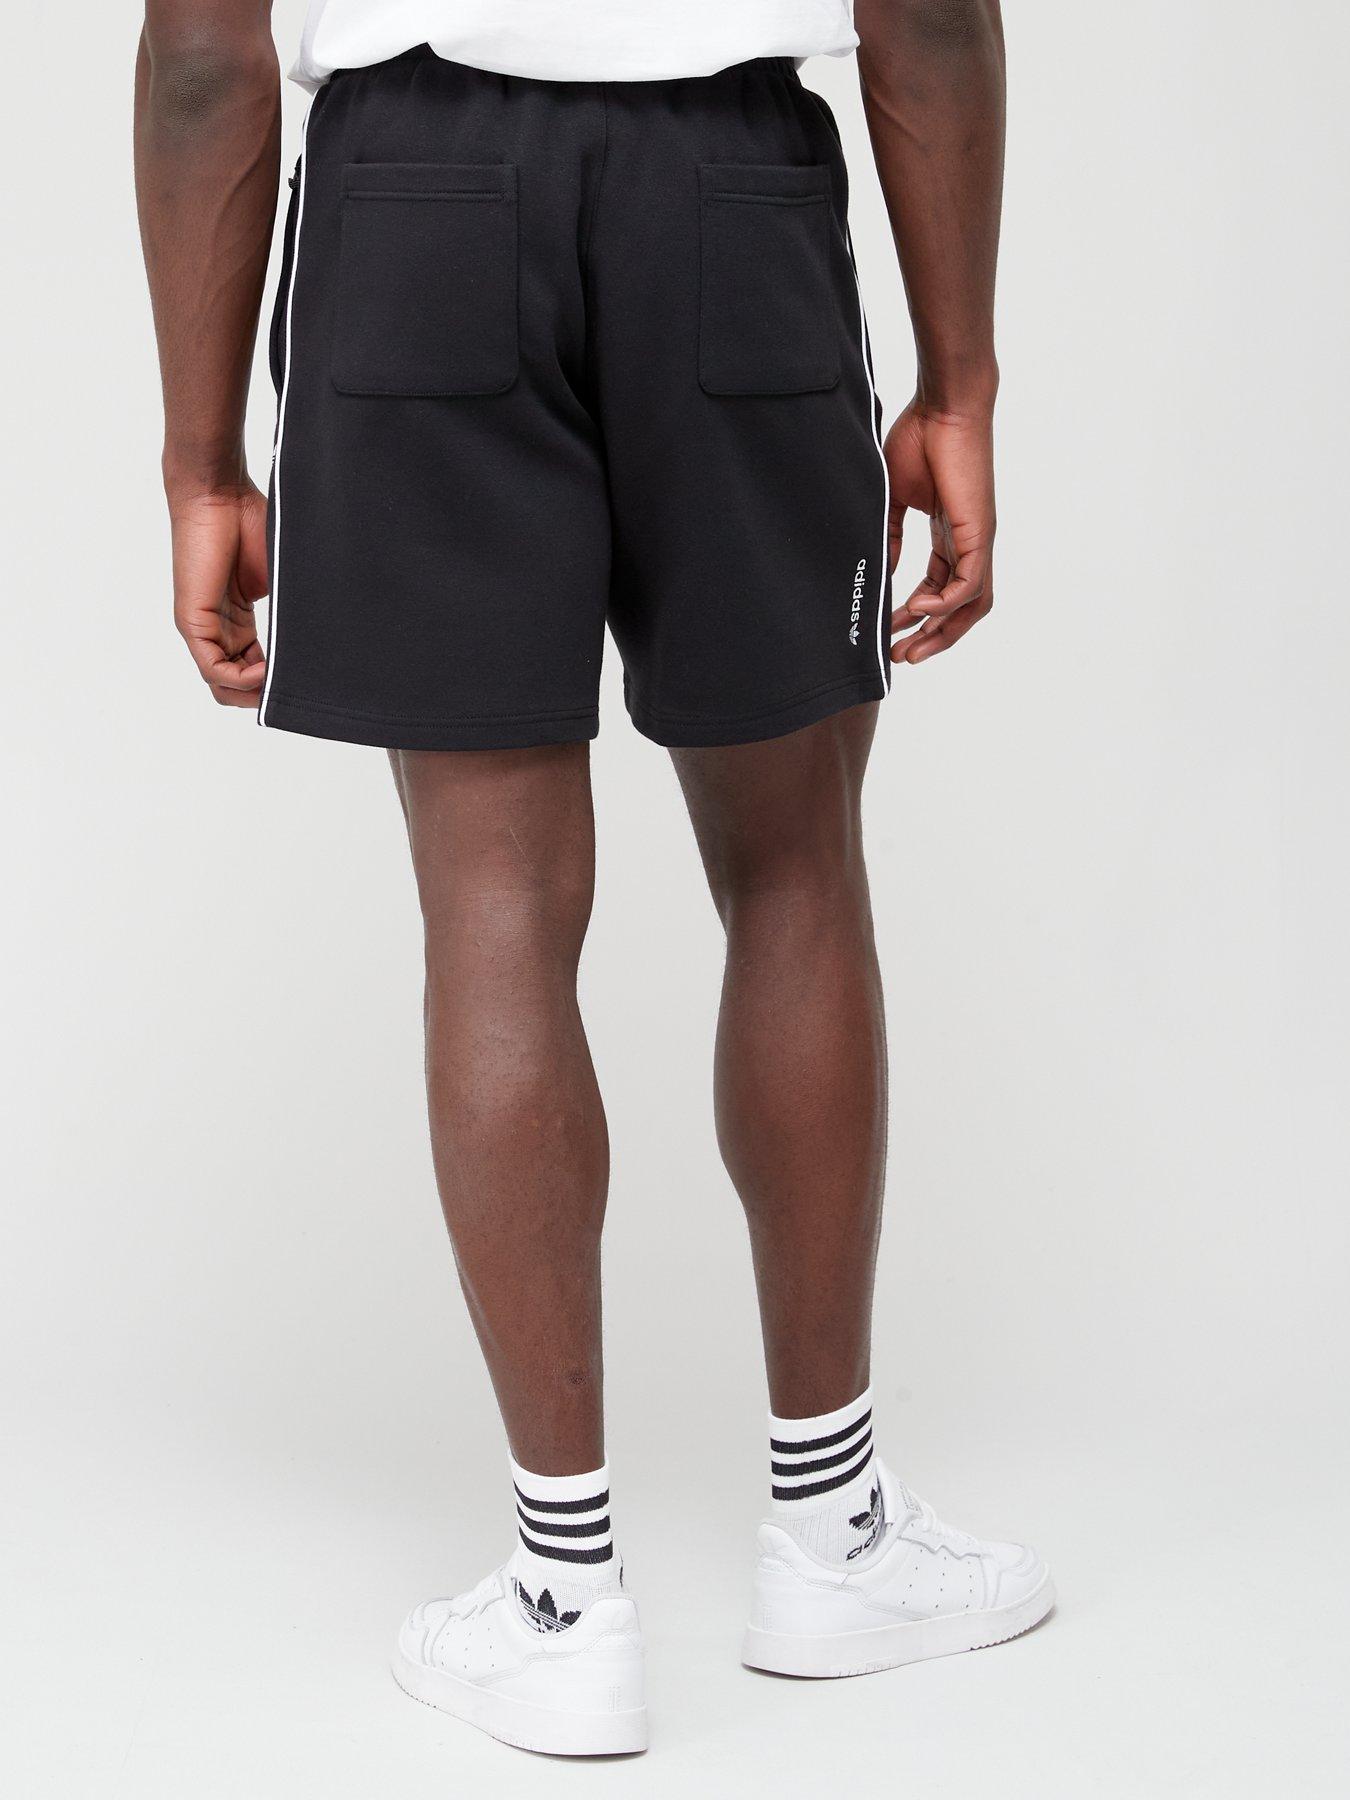 adidas Originals Adicolor Seasonal Black - Shorts Archive